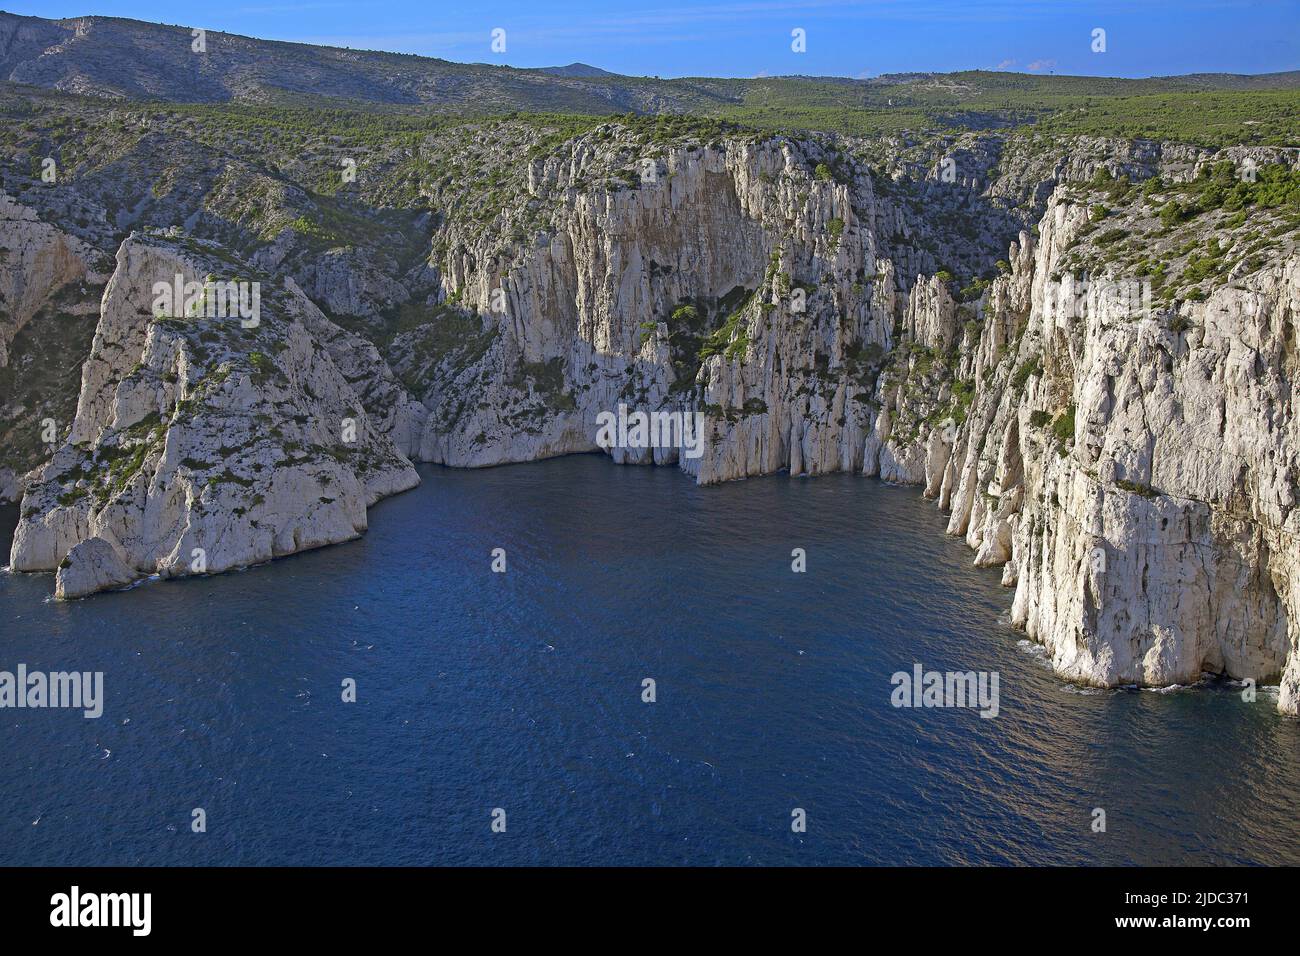 Francia, Bouches-du-Rhône Marsiglia, Parco Nazionale delle Calanques, le bianche scogliere di Devenson, foto aerea Foto Stock